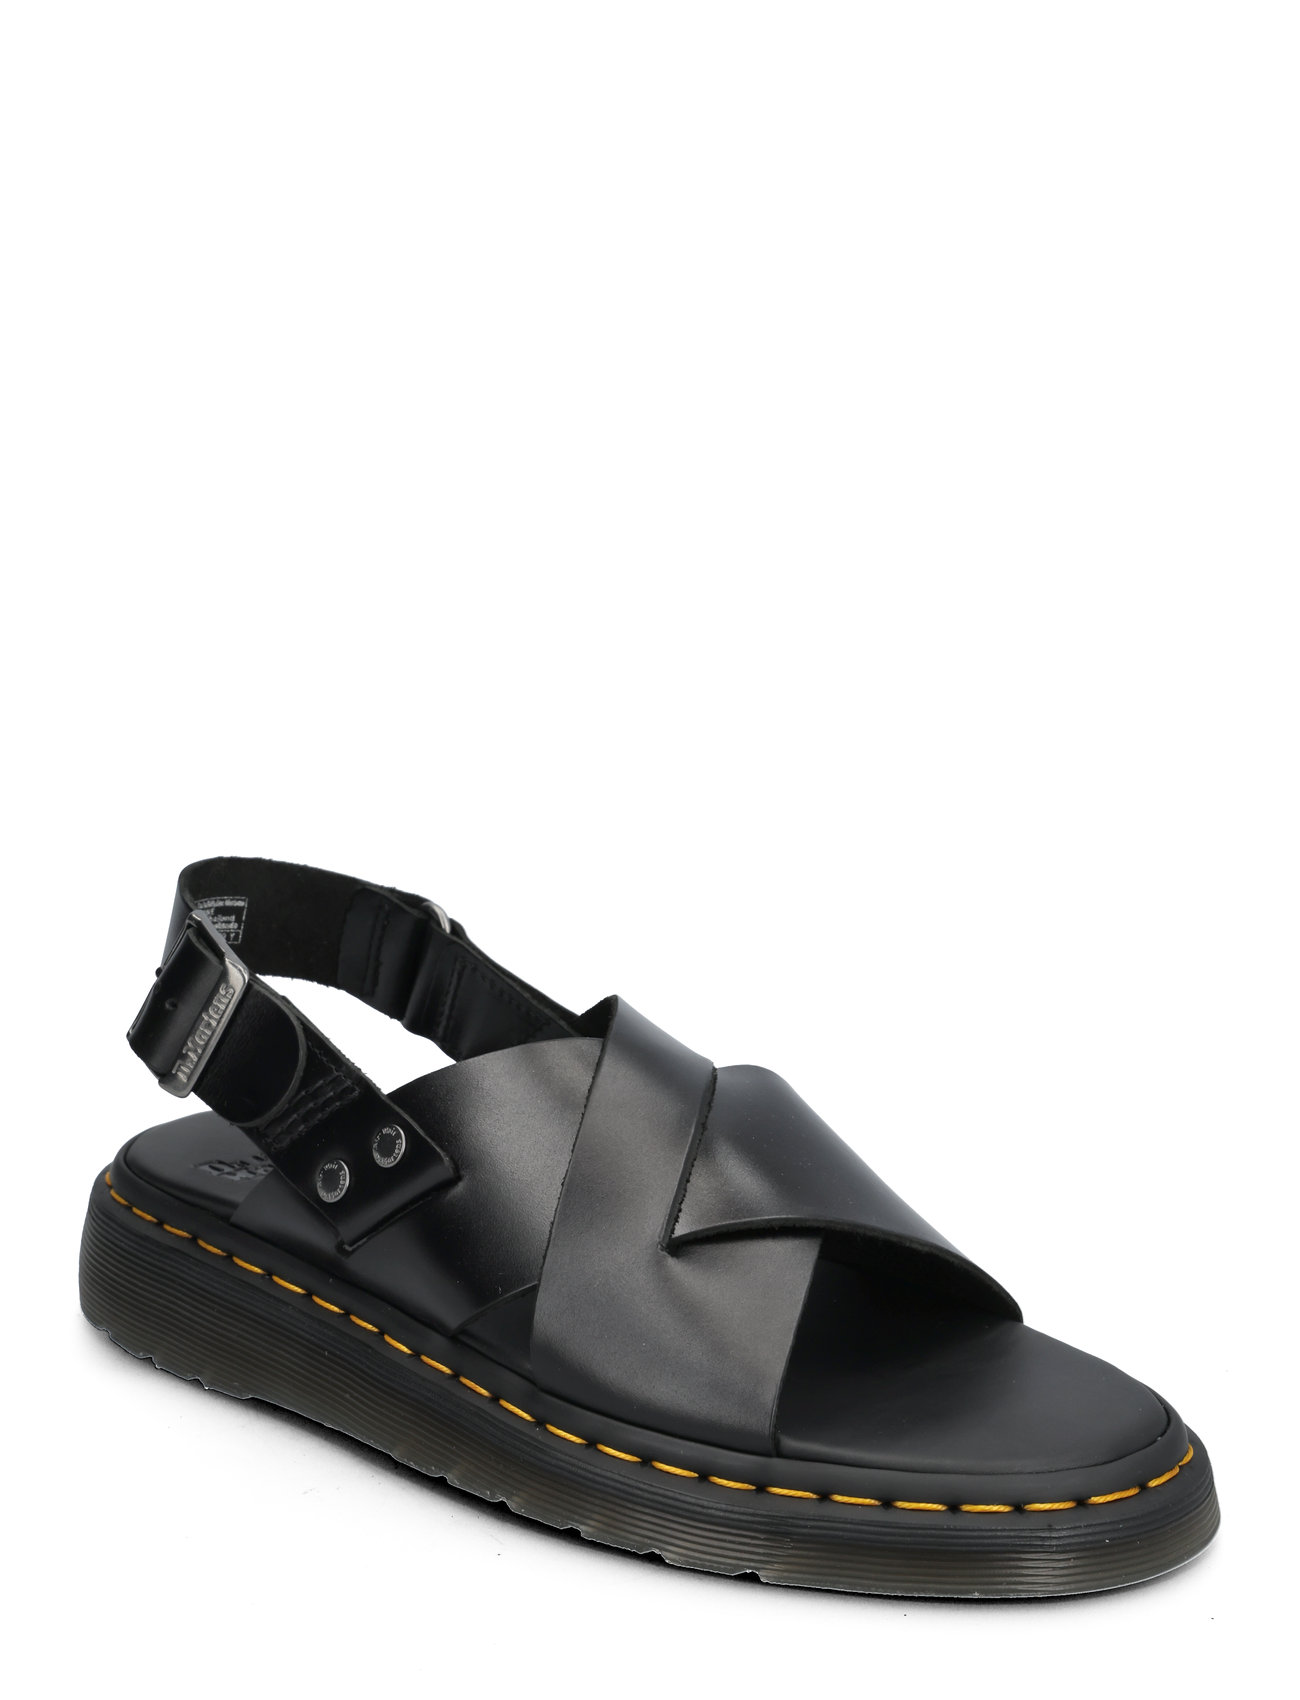 Zane Black Brando Designers Summer Shoes Sandals Black Dr. Martens